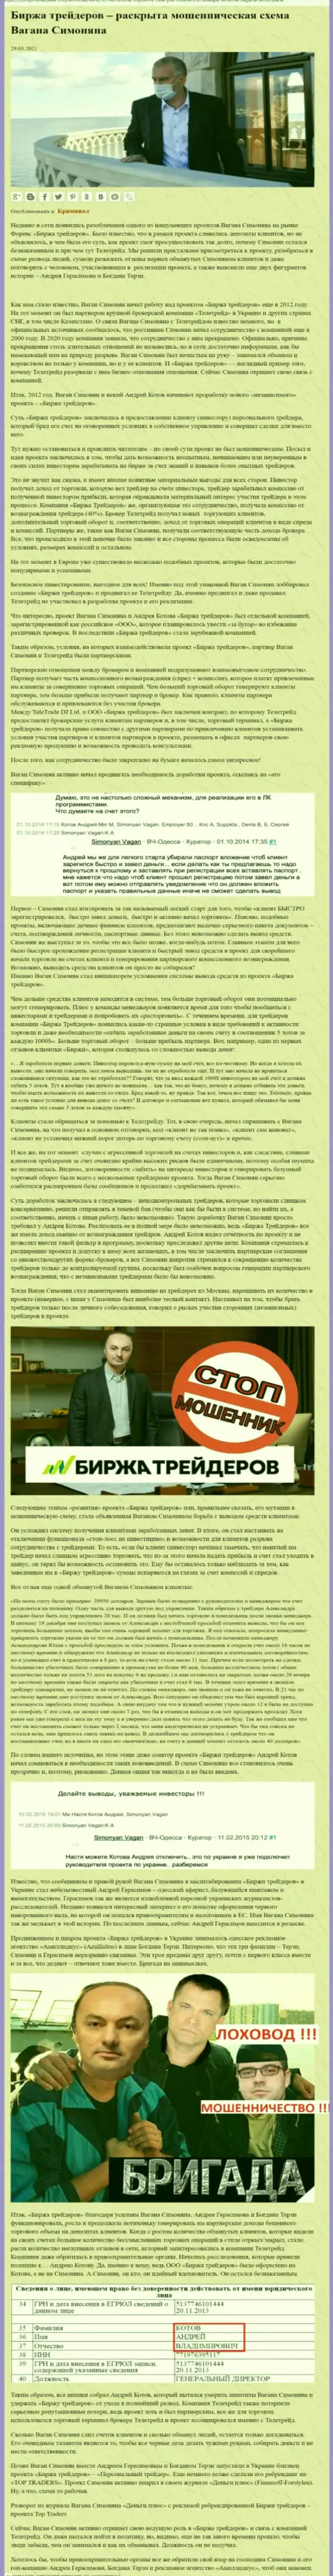 Пиаром конторы Биржа Трейдеров, связанной с мошенниками ТелеТрейд Орг, также был занят Терзи Богдан